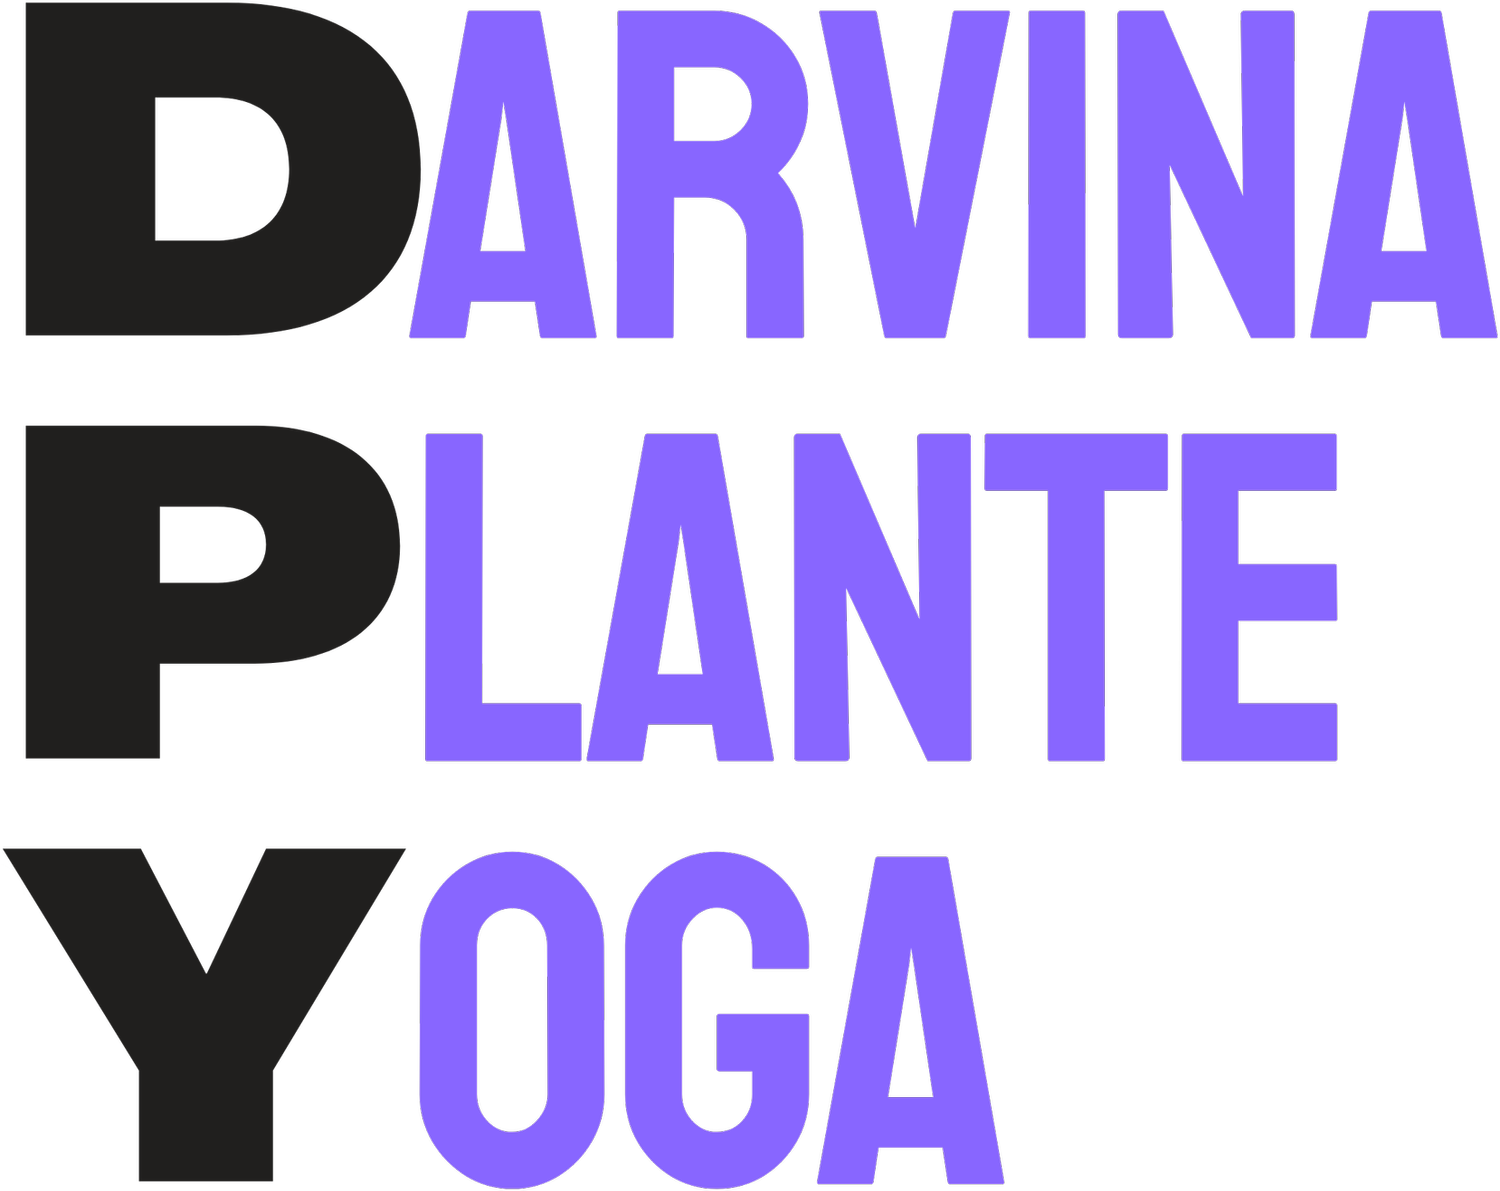 Yoga with Darvina Plante